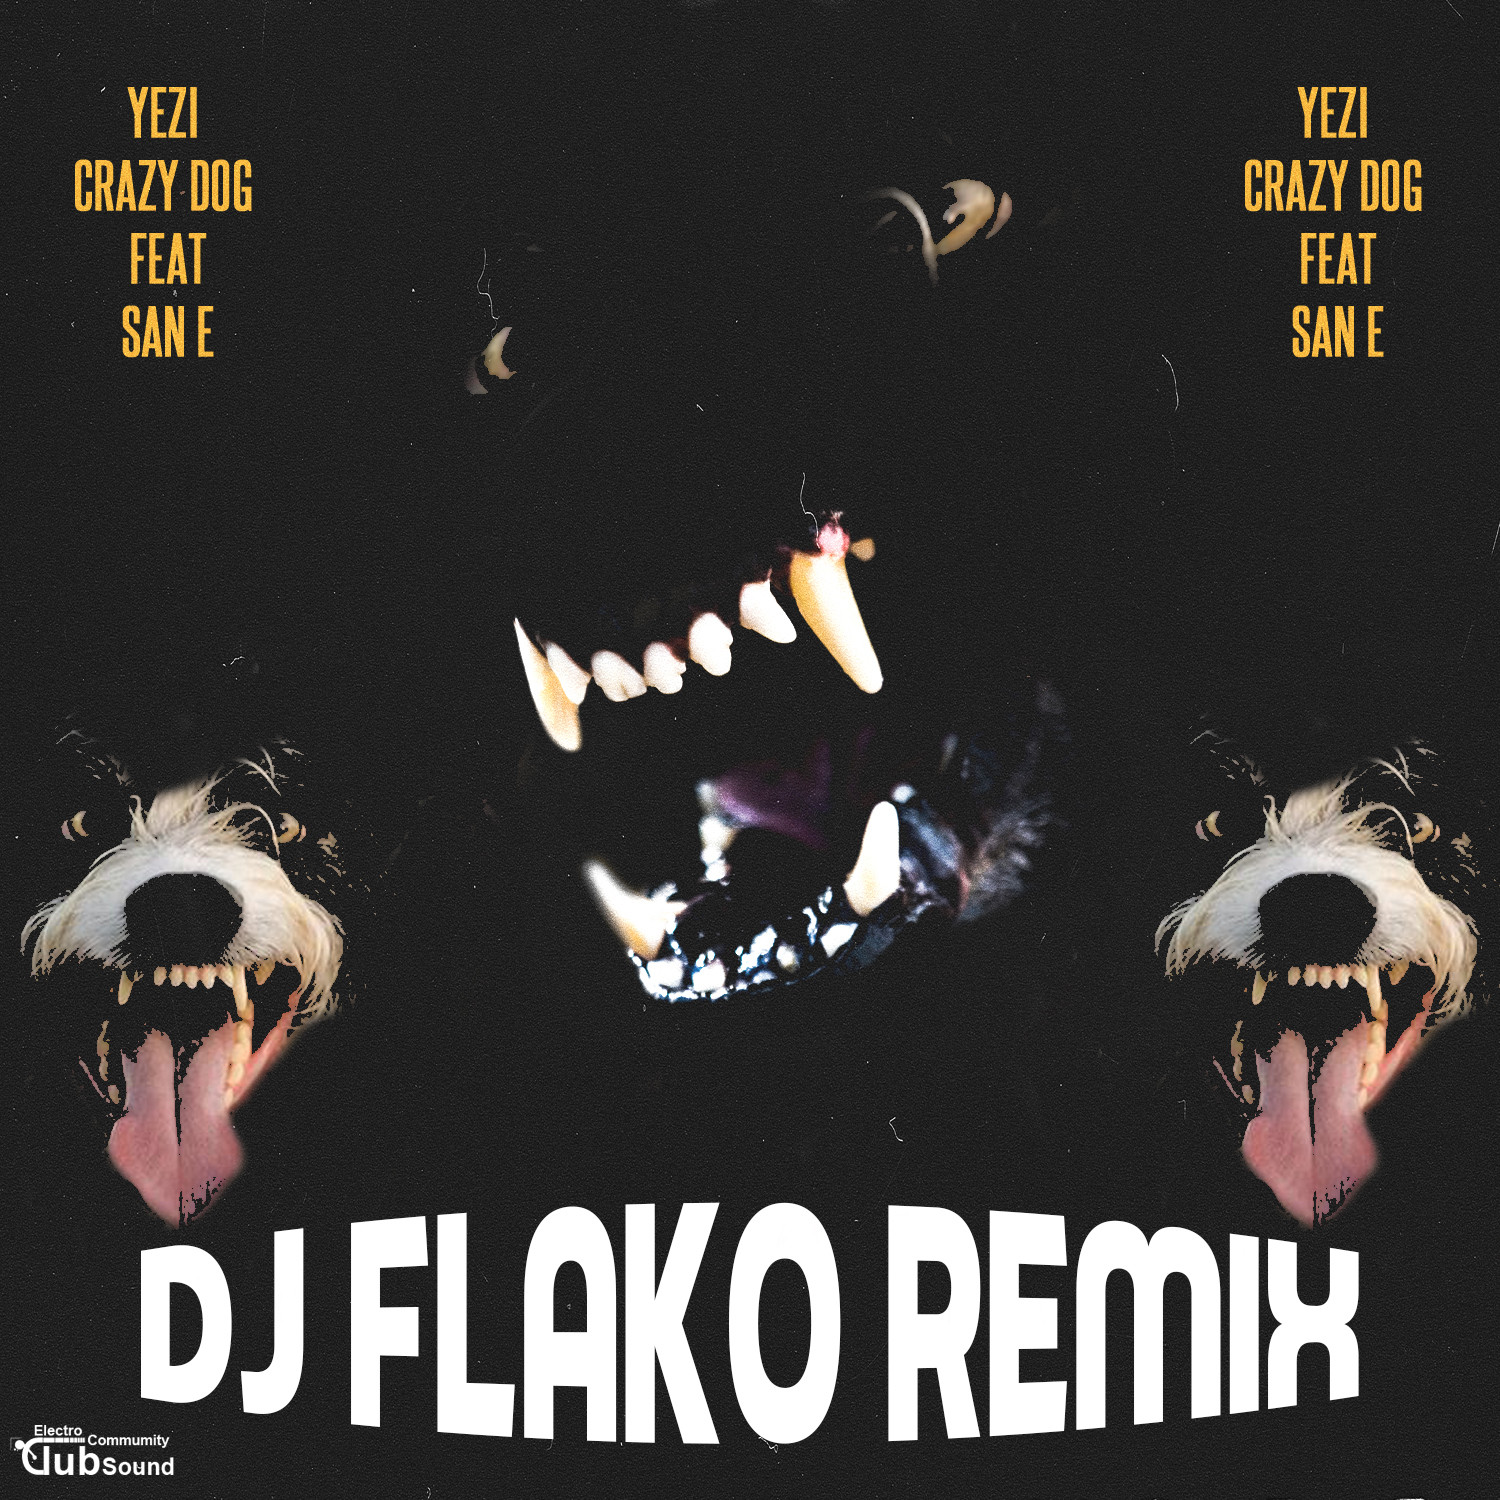 예지(Yezi) (Ft. San E) - Crazy Dog (DJ FLAKO Remix).jpg : 국내EDM프로듀서 DJ FLAKO의 새해 첫 리믹스 공개! 